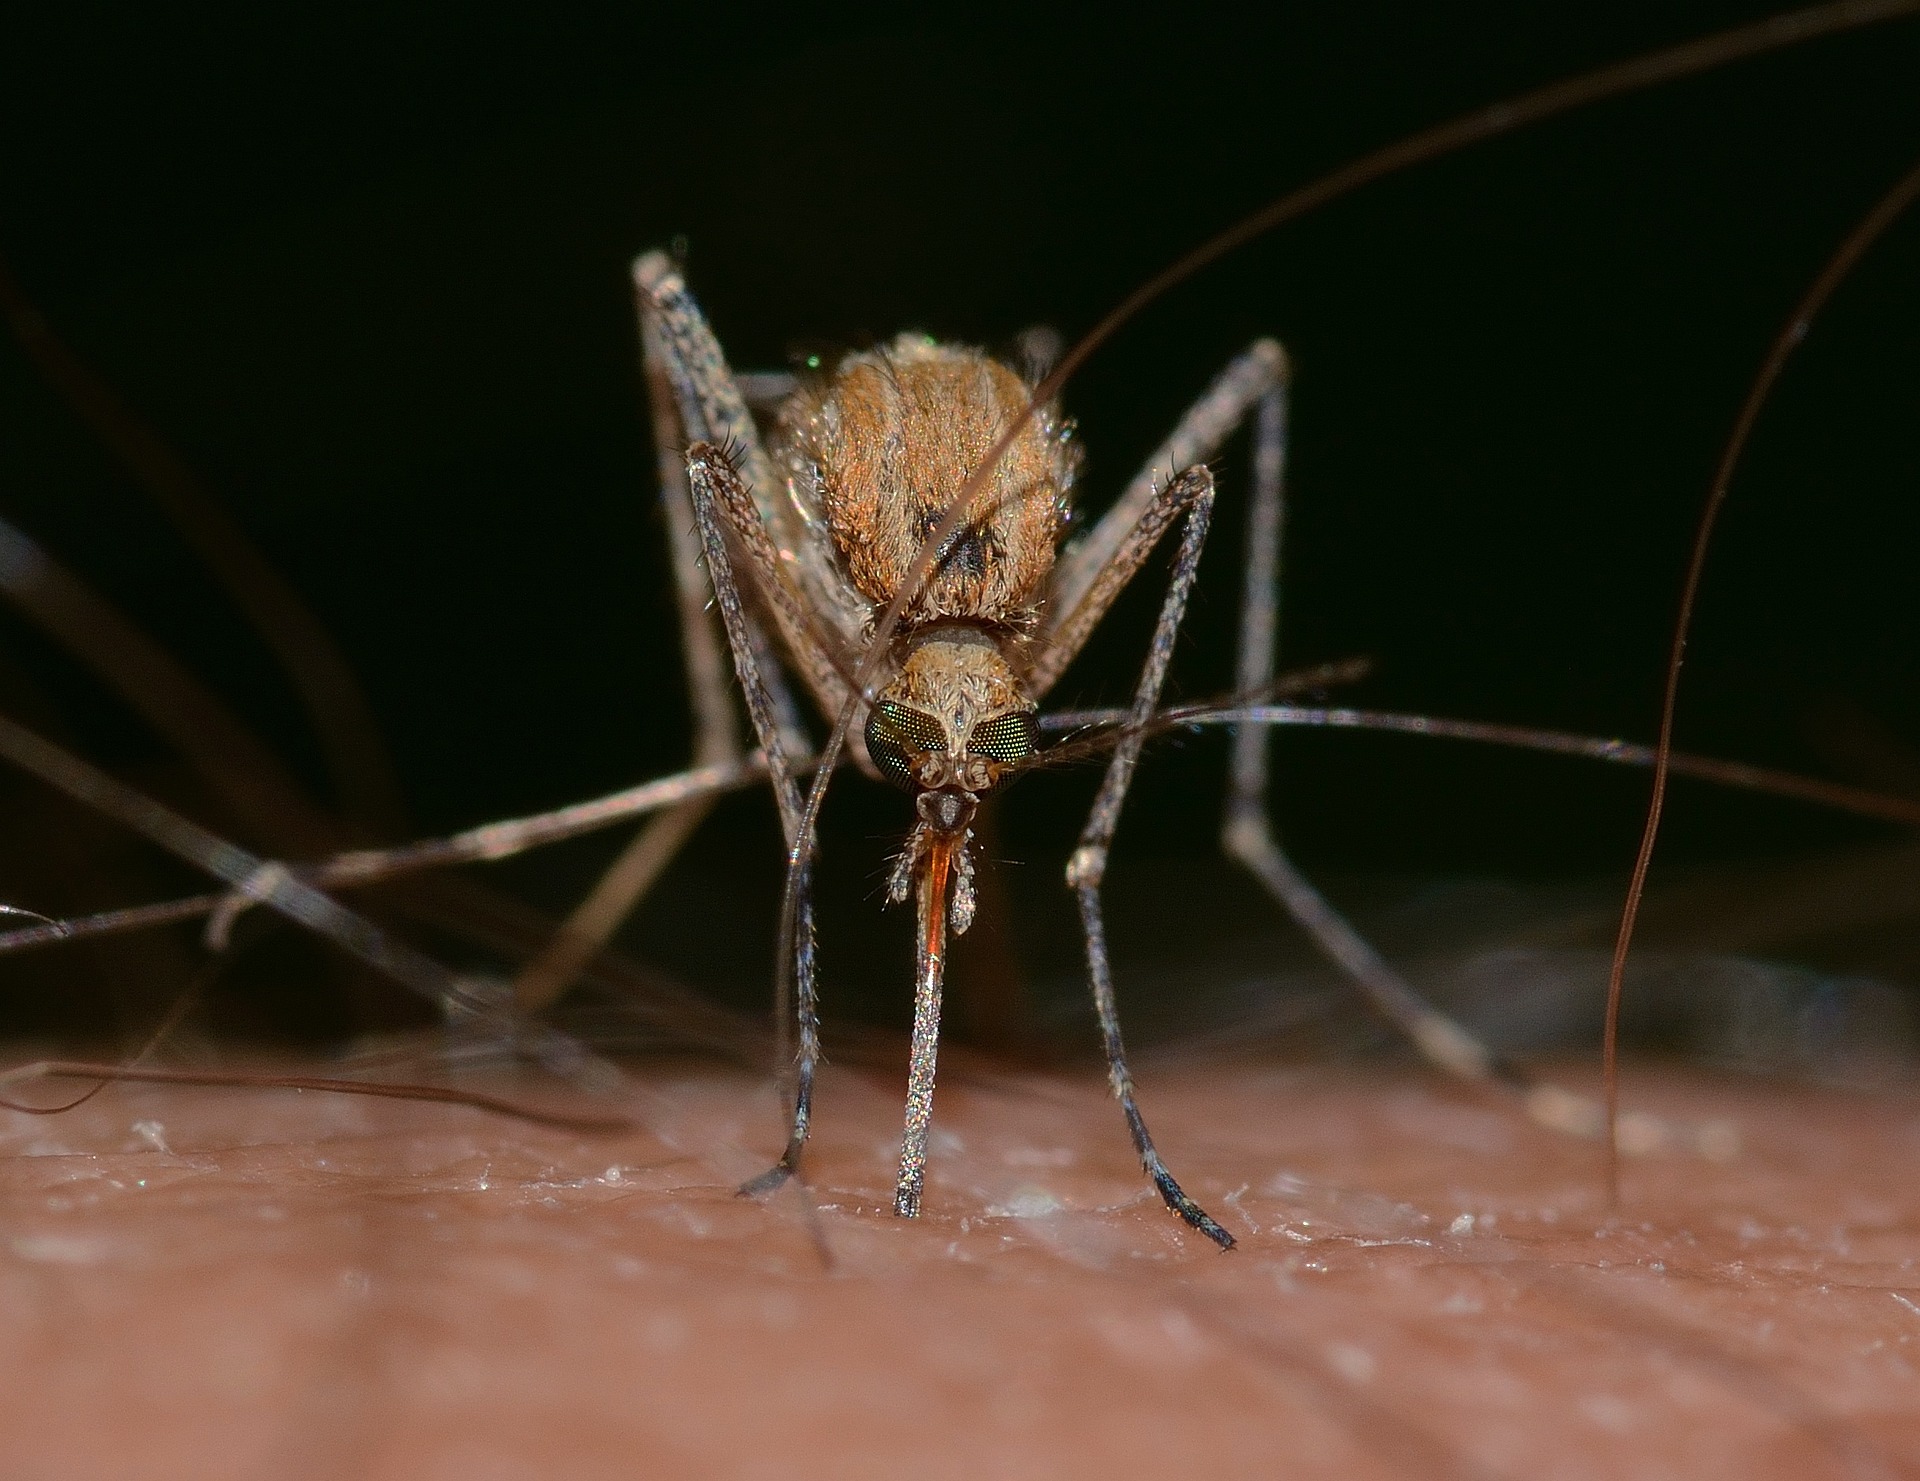 Mosquito Removal San Diego, La Mesa, Spring Valley, El Cajon - DandSTermite.com.